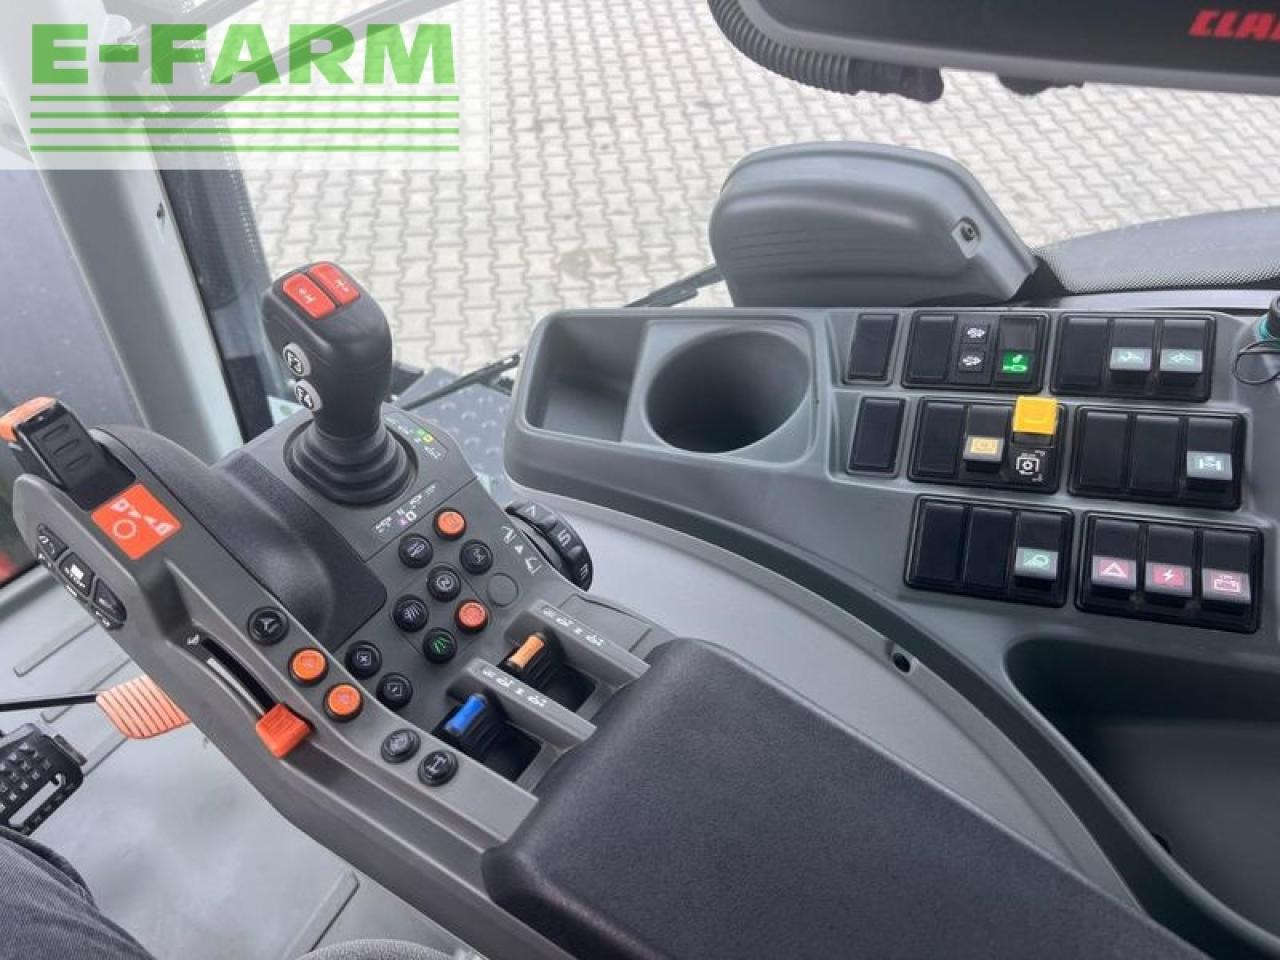 Farm tractor CLAAS axion 850